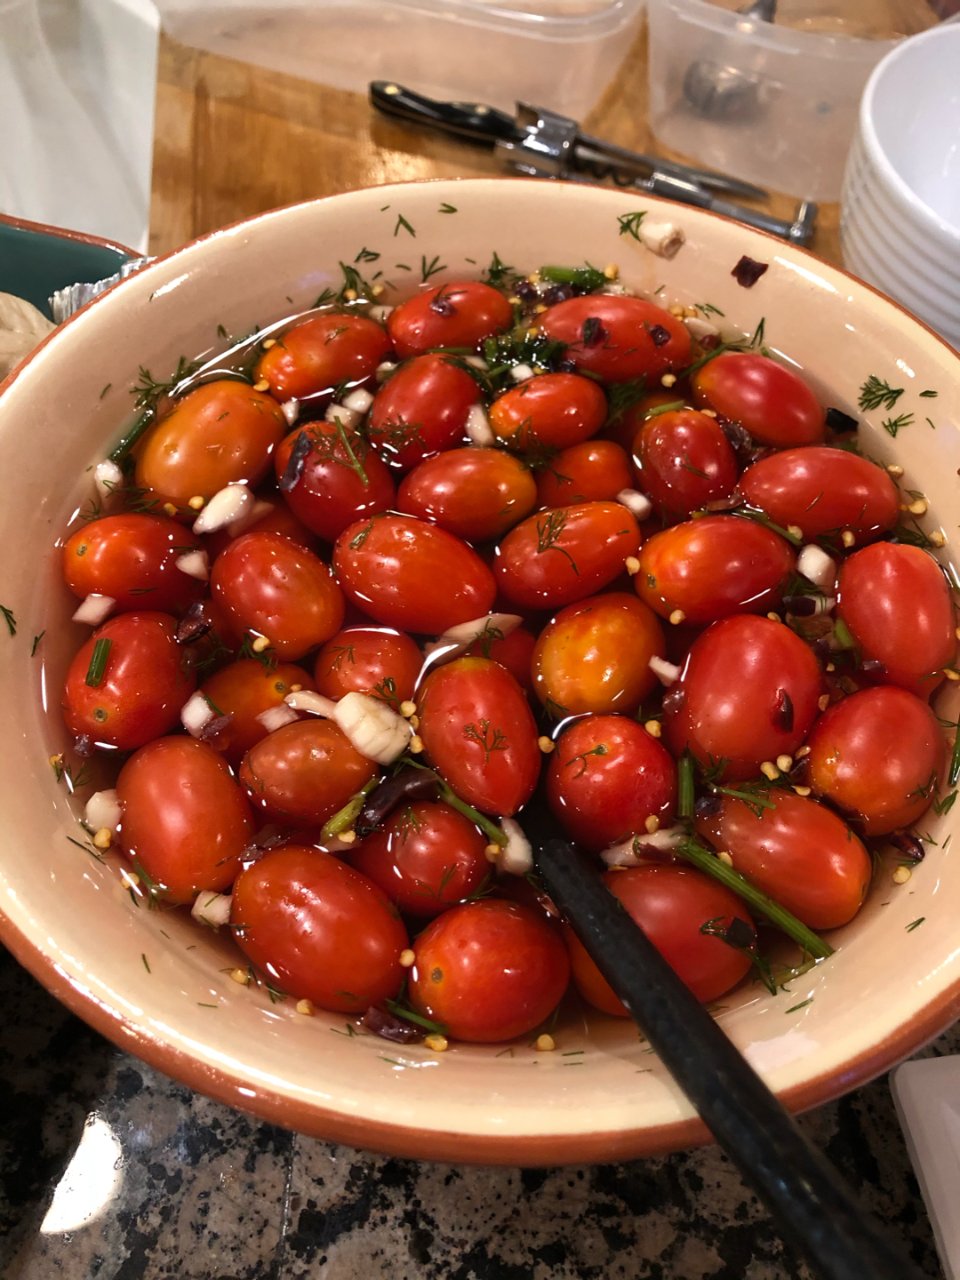 自己腌制的圣女果,来自自家菜园的小番茄,快手腌制,美式腌菜